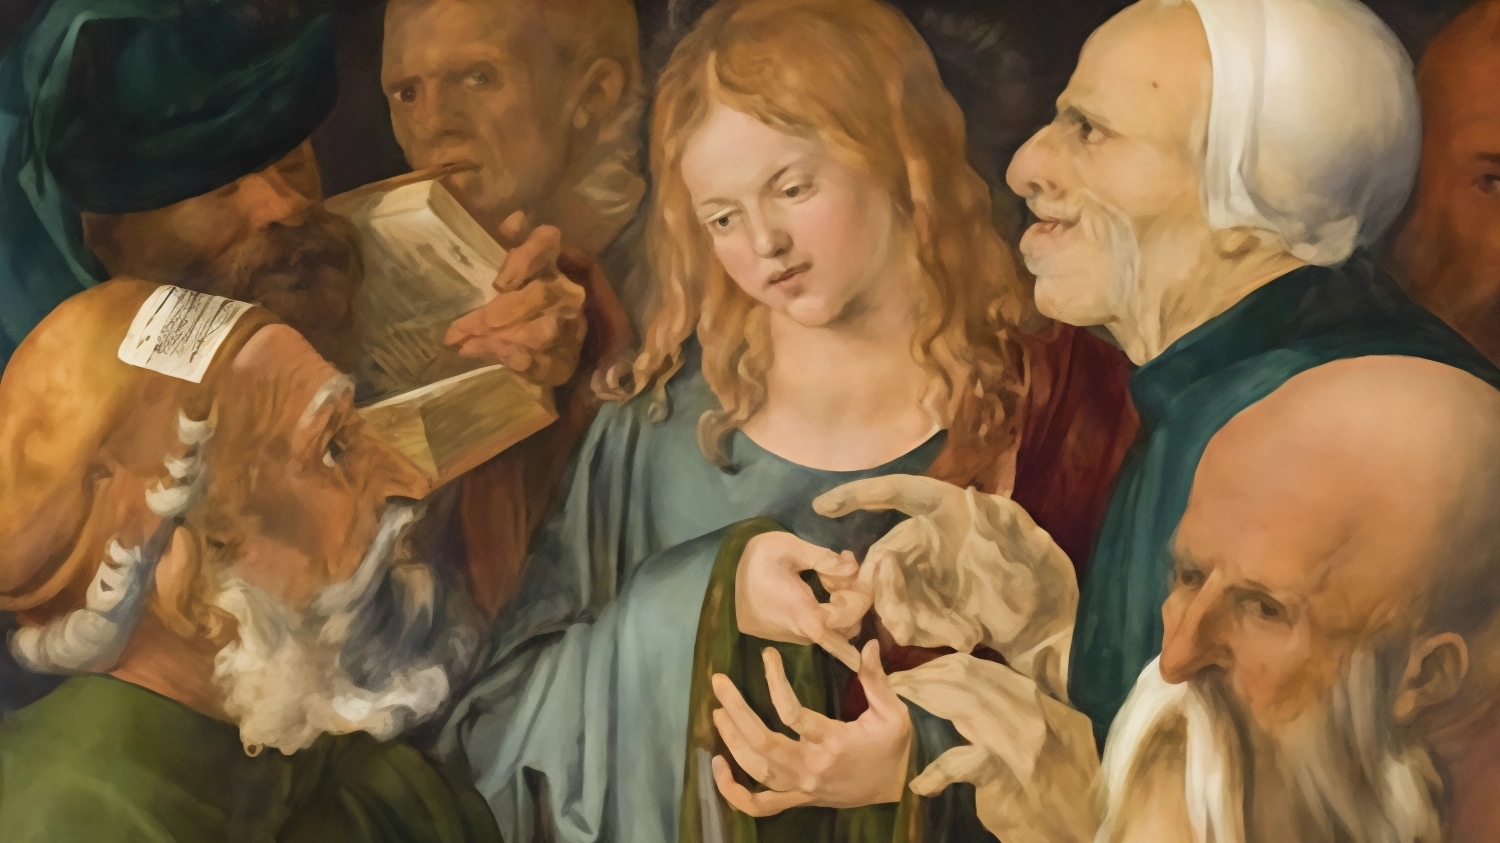 Albrecht Dürer, giovane artista tedesco, si recò in Italia per scoprire il Rinascimento trentino. La mostra a Trento celebra questo incontro artistico e culturale.